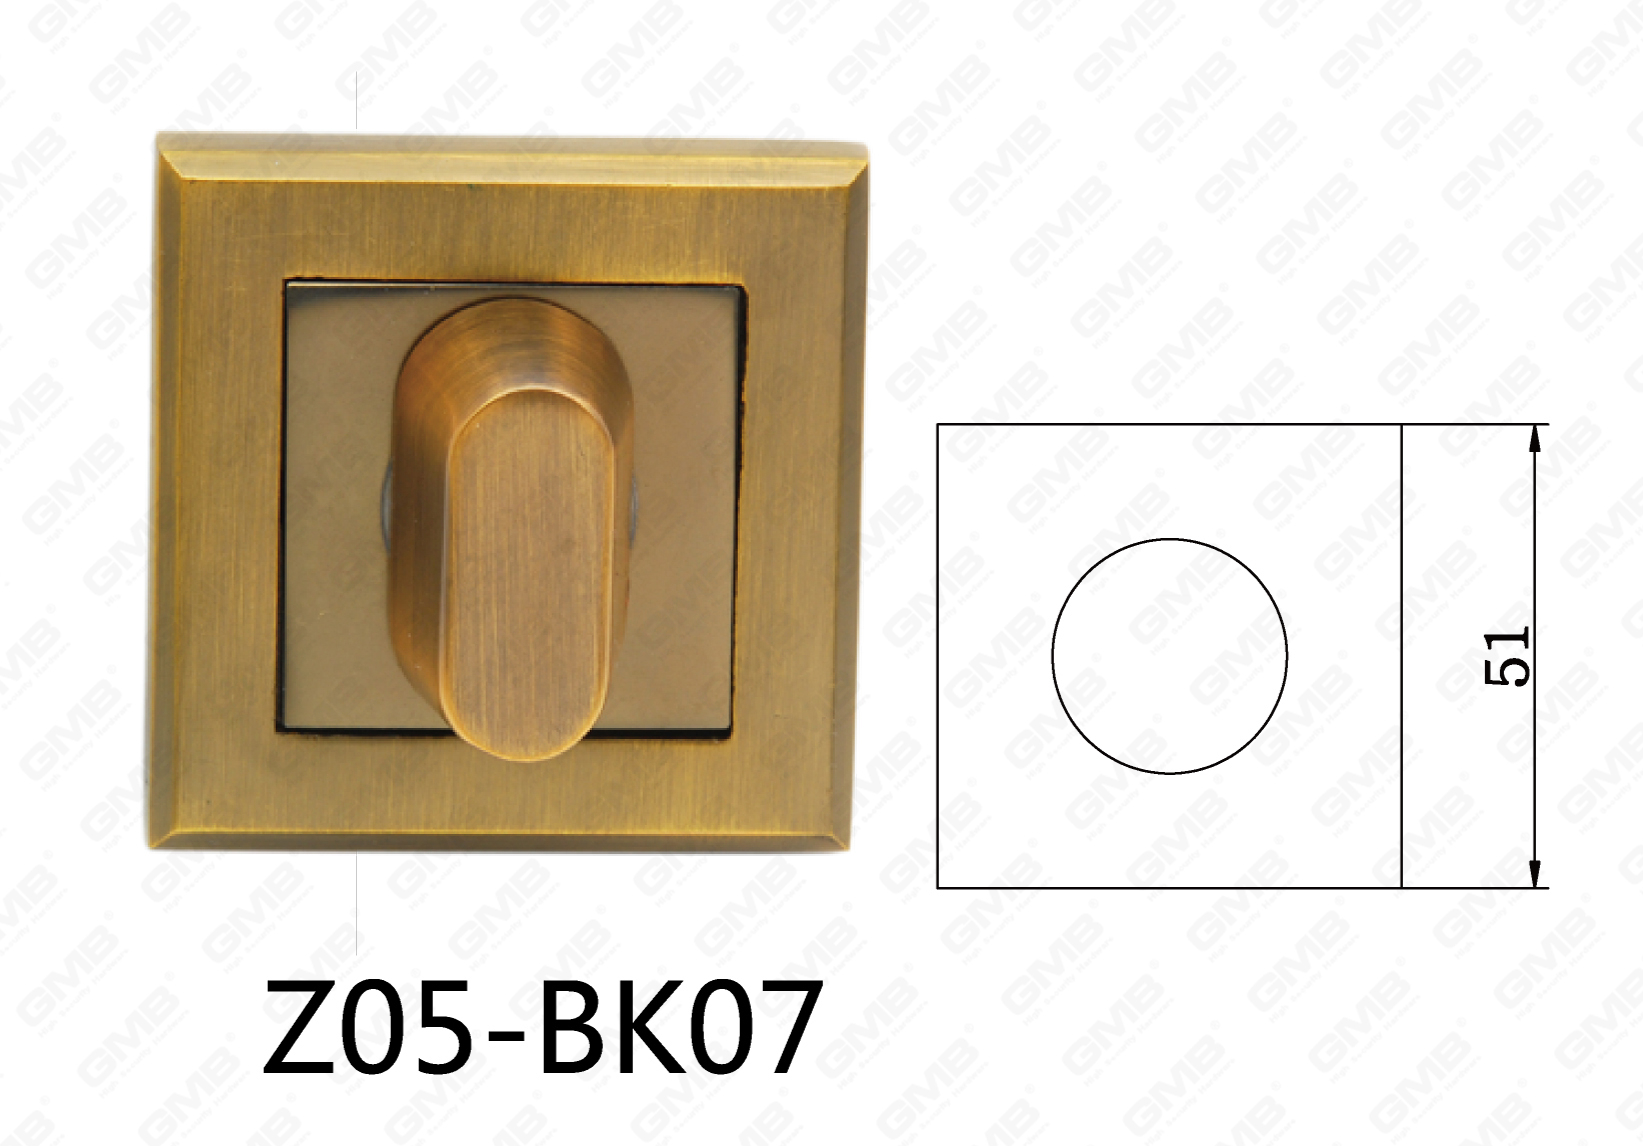 Zamak aleación de zinc manija de puerta de aluminio escudo cuadrado (Z05-BK07)